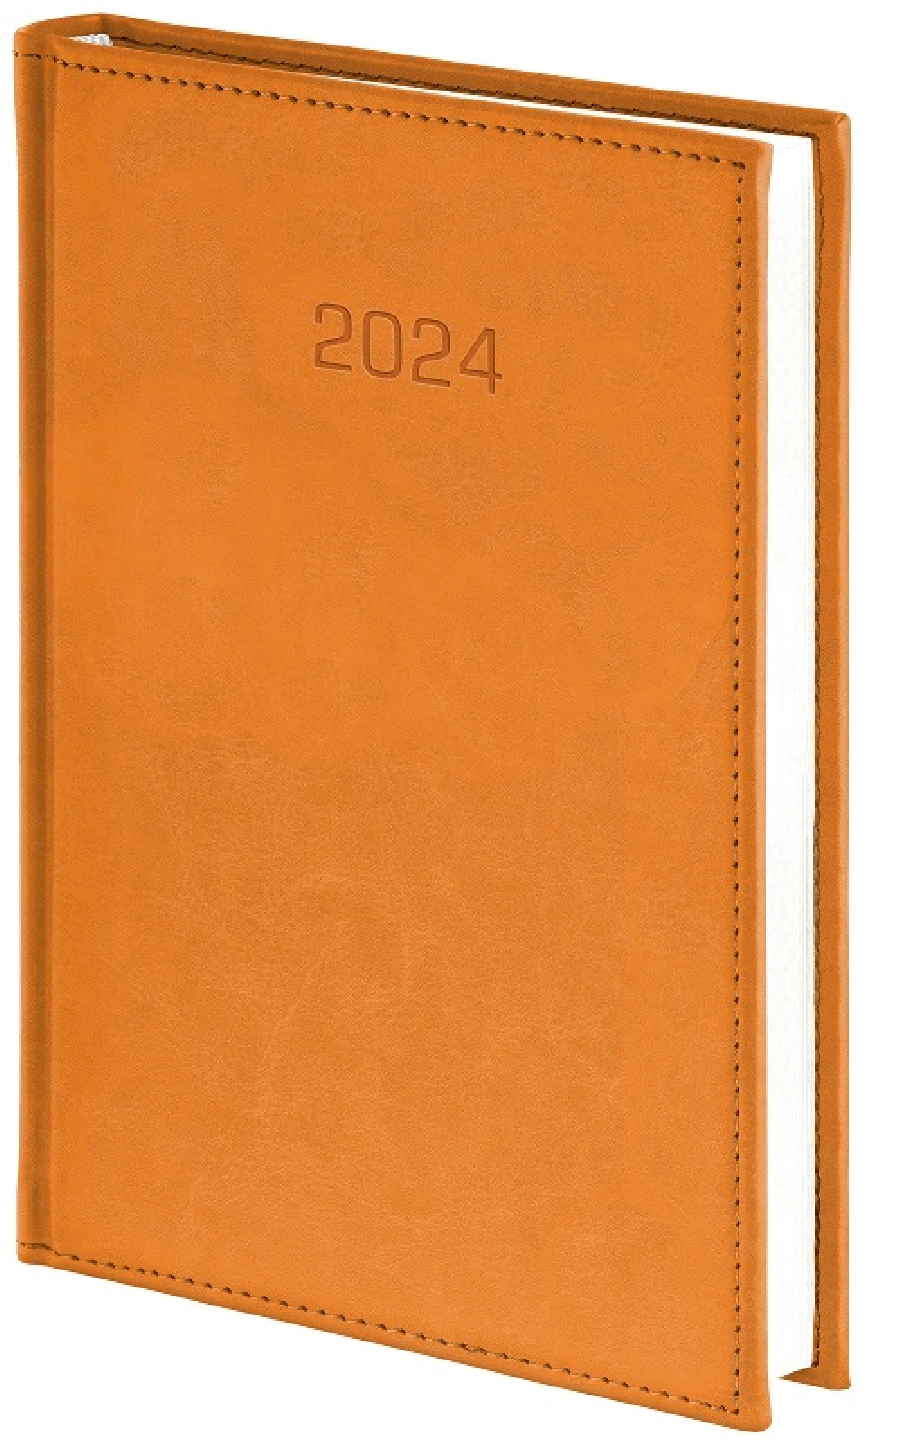 Nebraska kalendarz książkowy 2024 tygodniowy B5 GR-160086